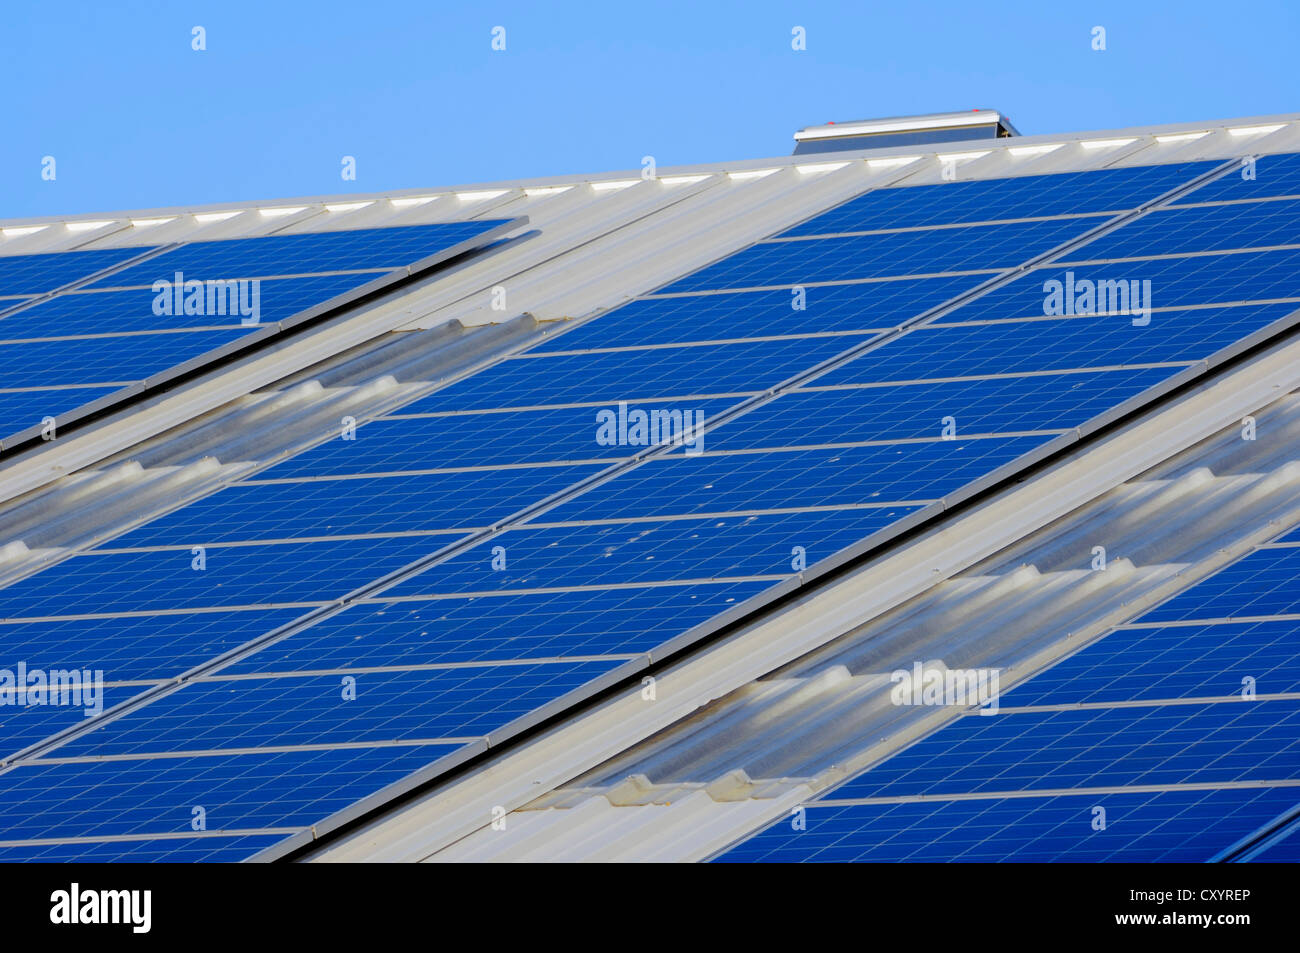 Impianto fotovoltaico, celle solari, pannelli solari sul tetto di una azienda, Renania settentrionale-Vestfalia, PublicGround Foto Stock